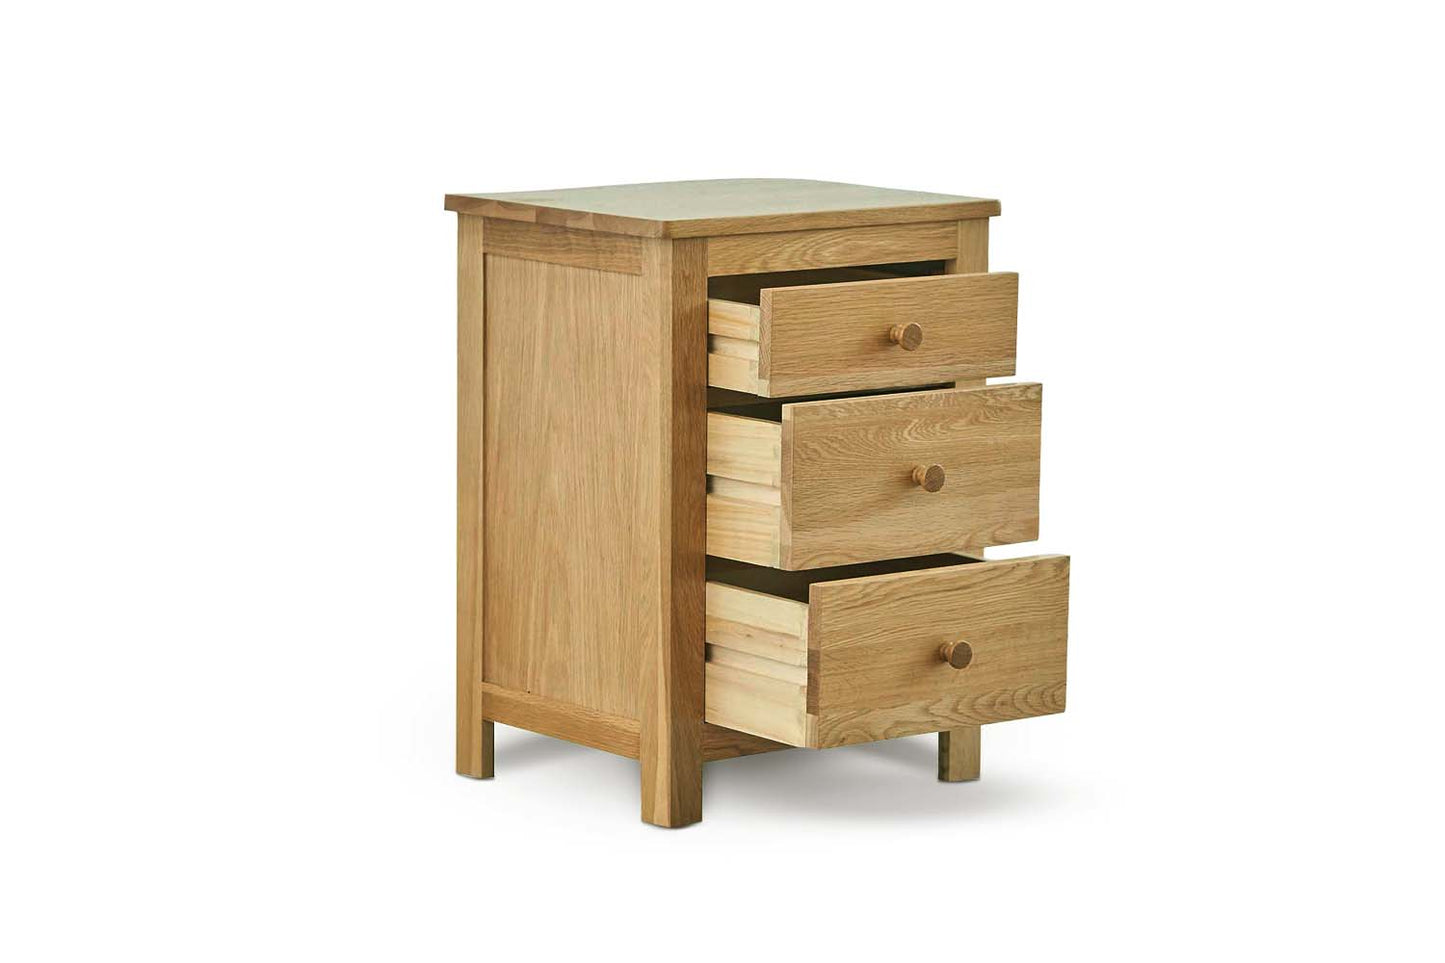 2+1 Drawer Bedside Table - Standard Style - Natural Oak